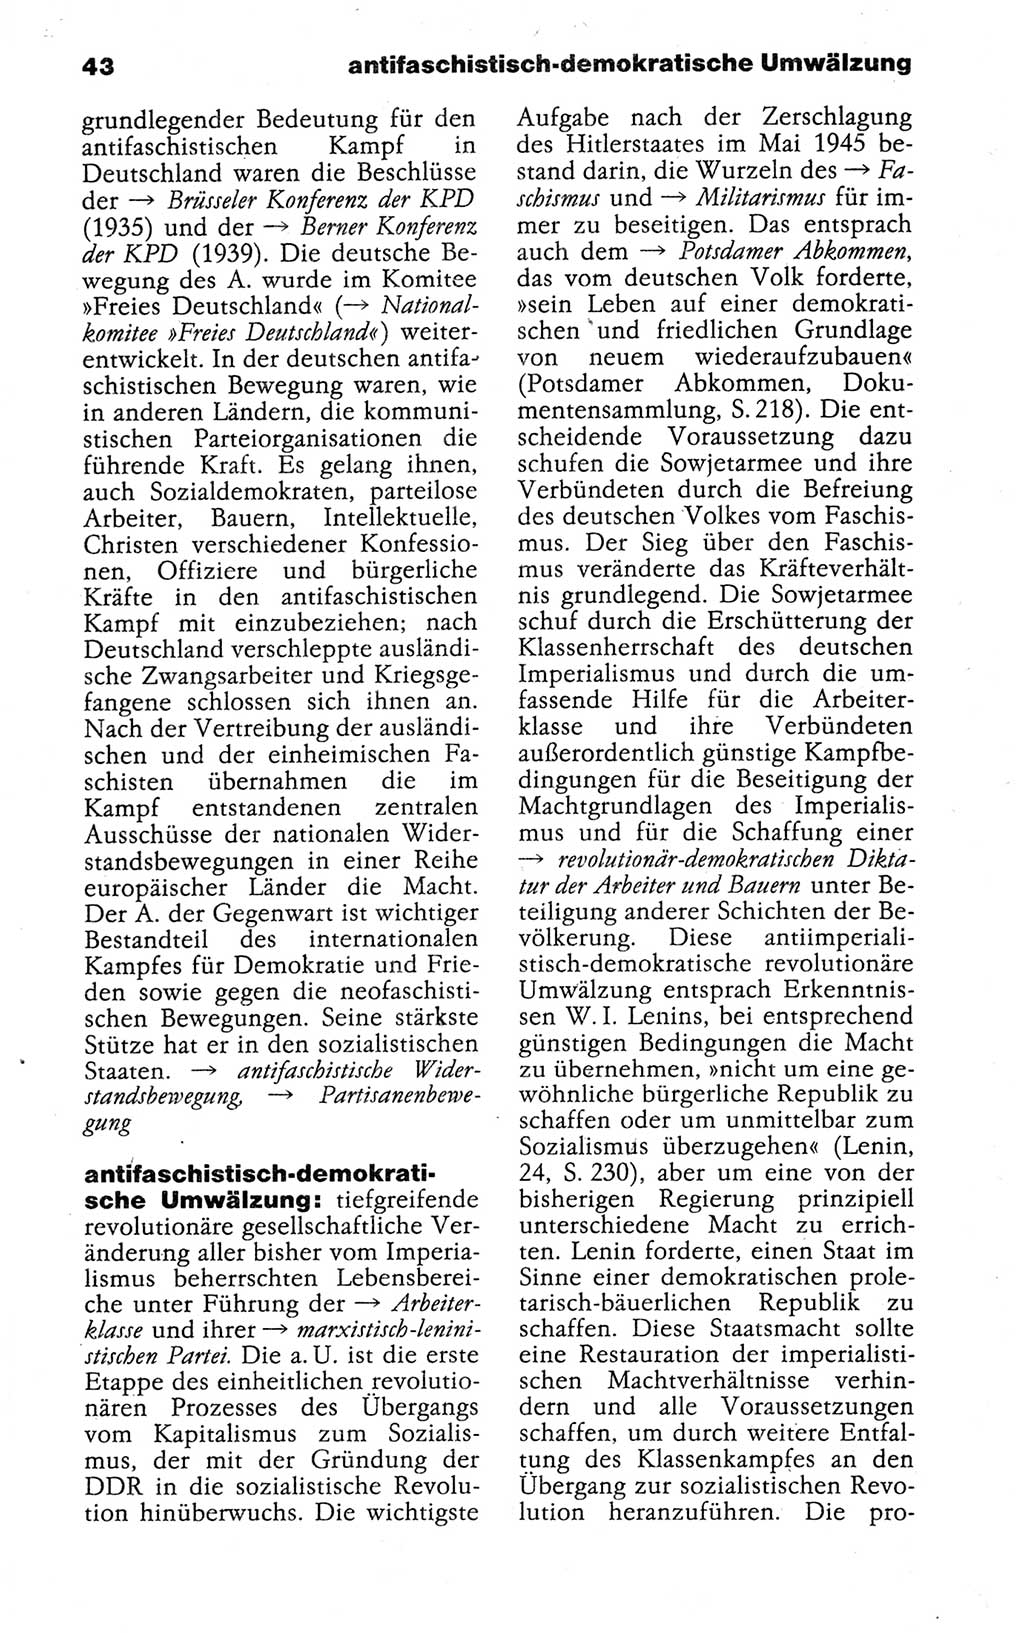 Kleines politisches Wörterbuch [Deutsche Demokratische Republik (DDR)] 1988, Seite 43 (Kl. pol. Wb. DDR 1988, S. 43)